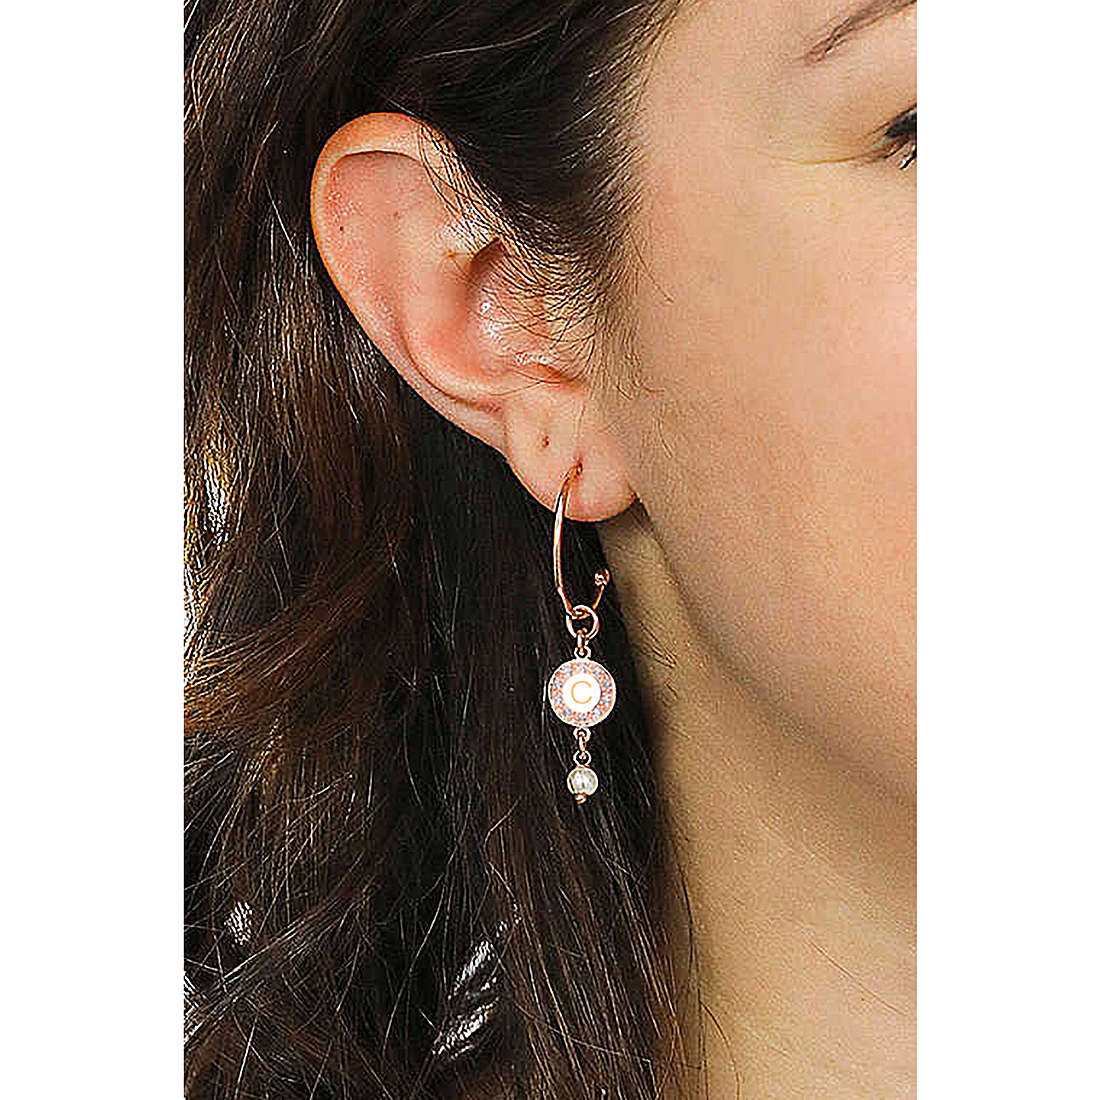 Dvccio earrings Kelly woman OTRESAGR-c wearing